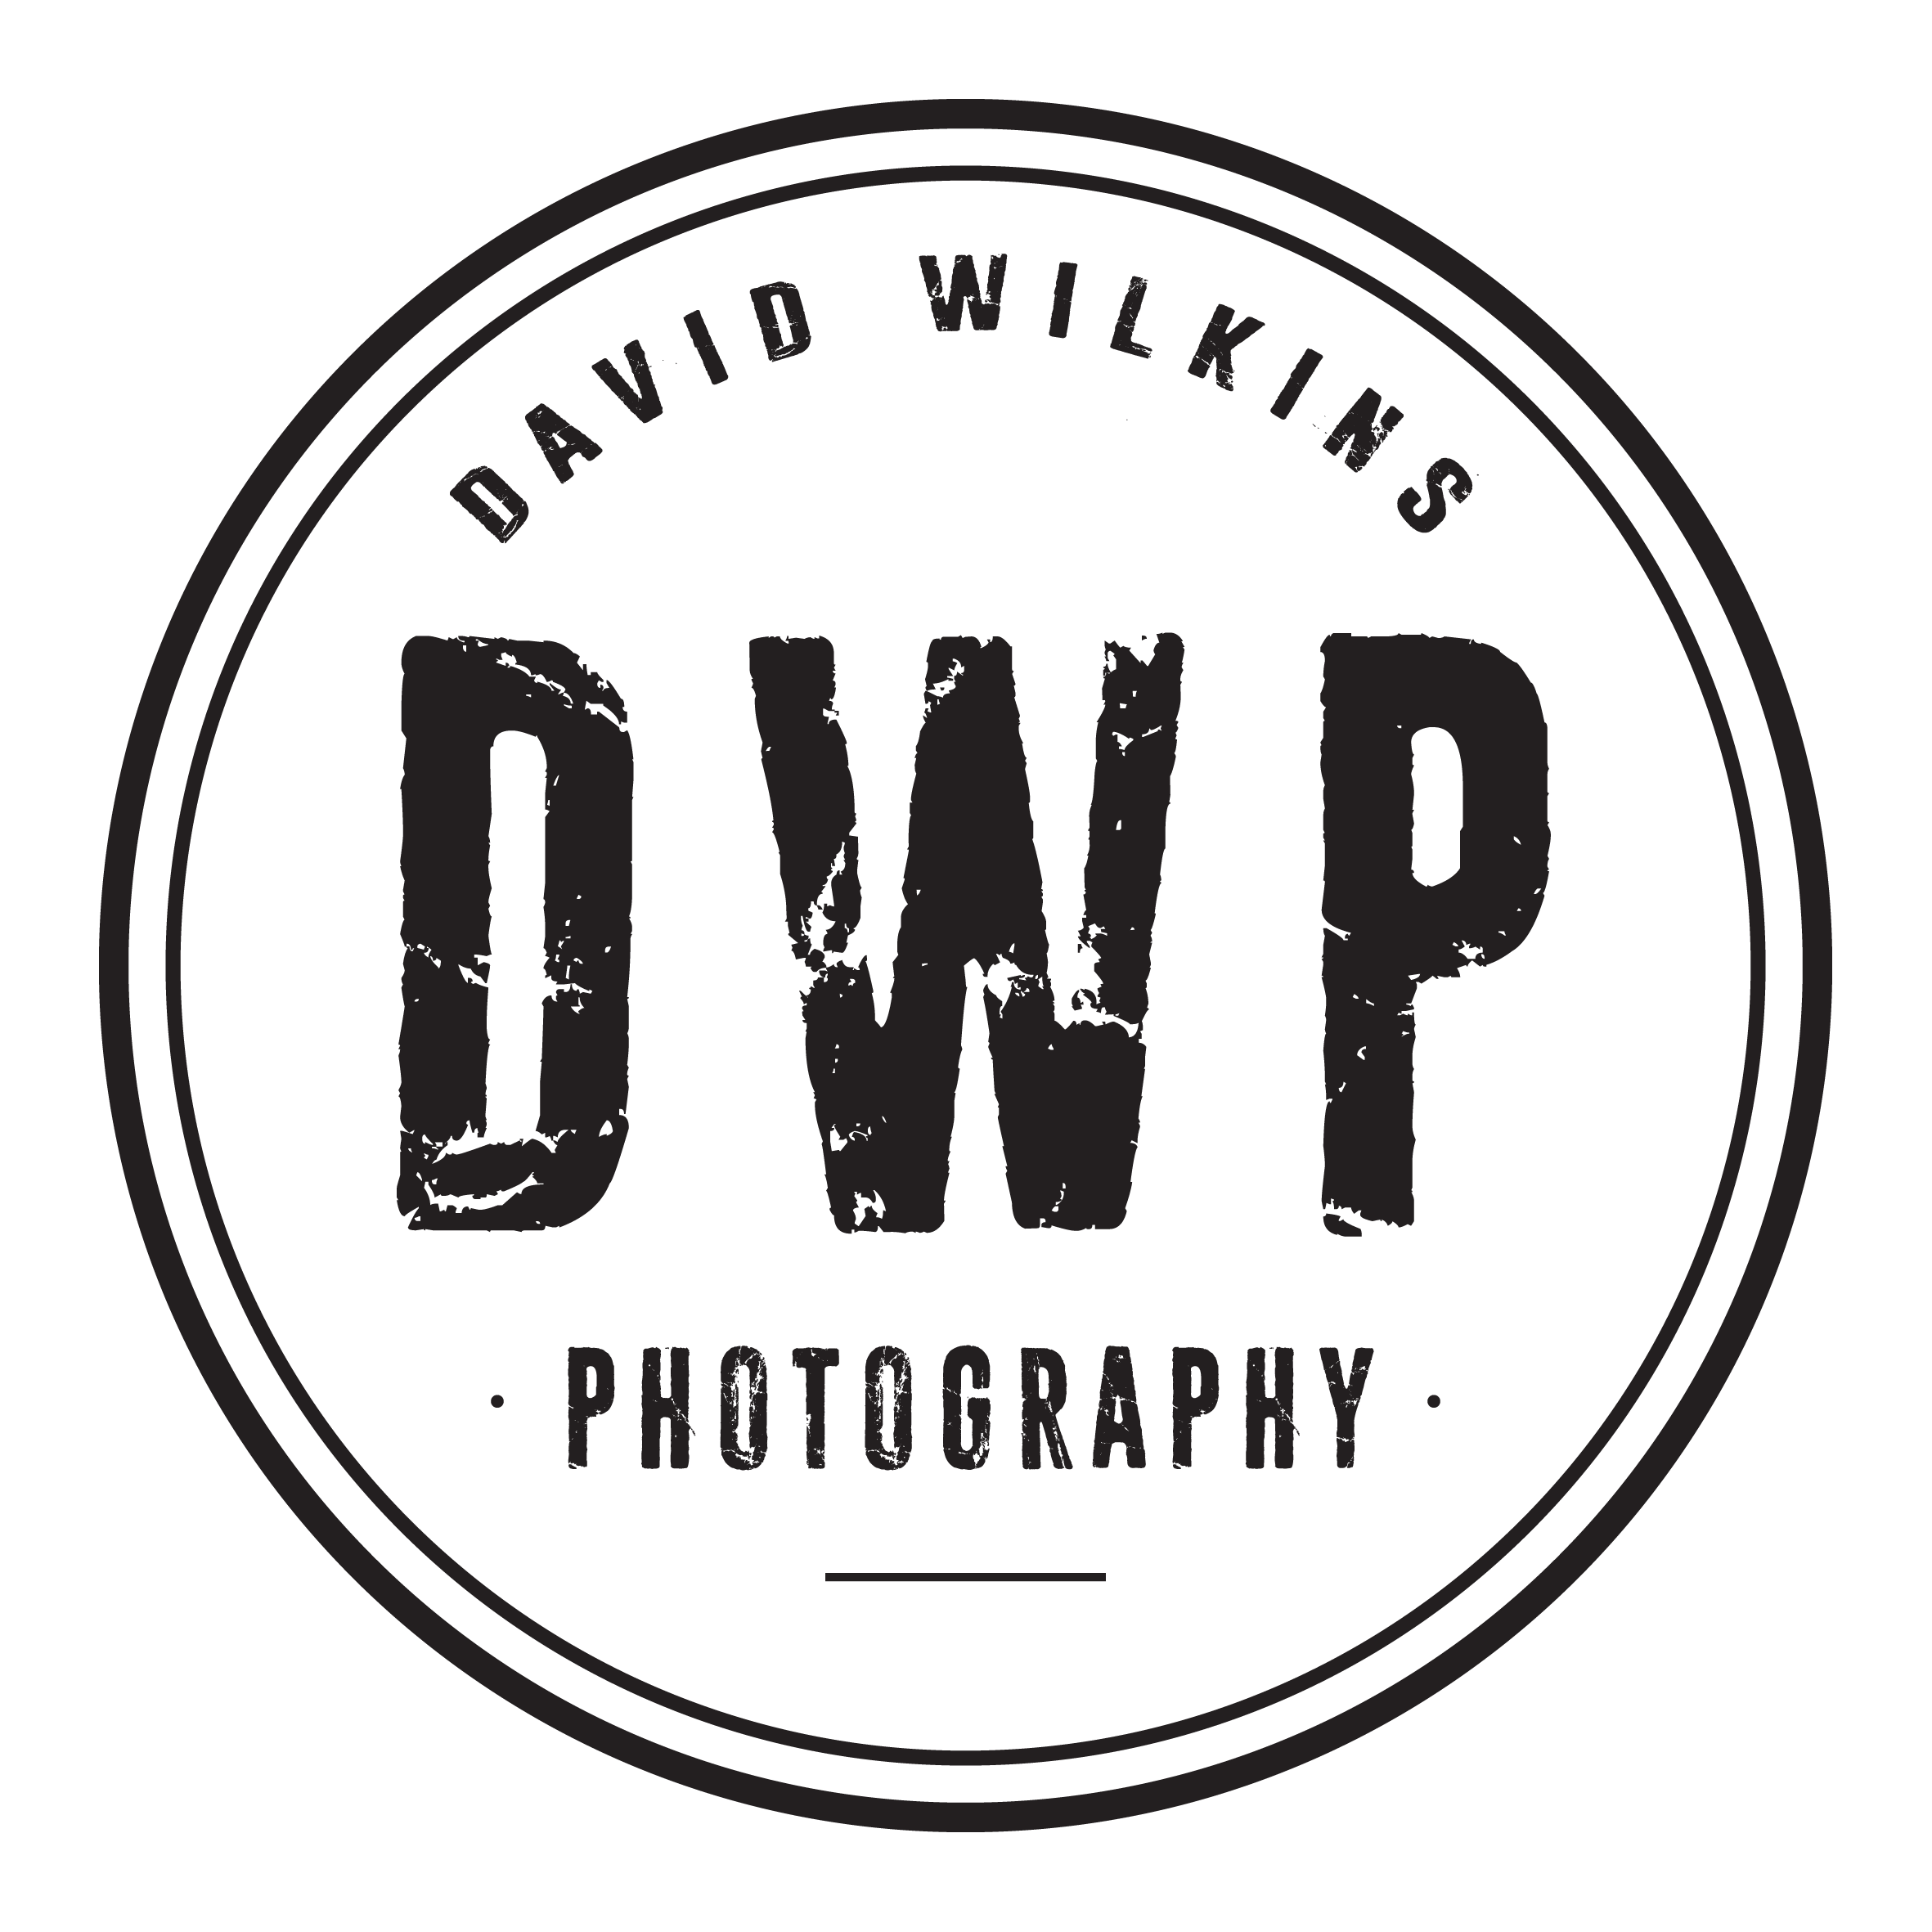 David Wilkins - Website